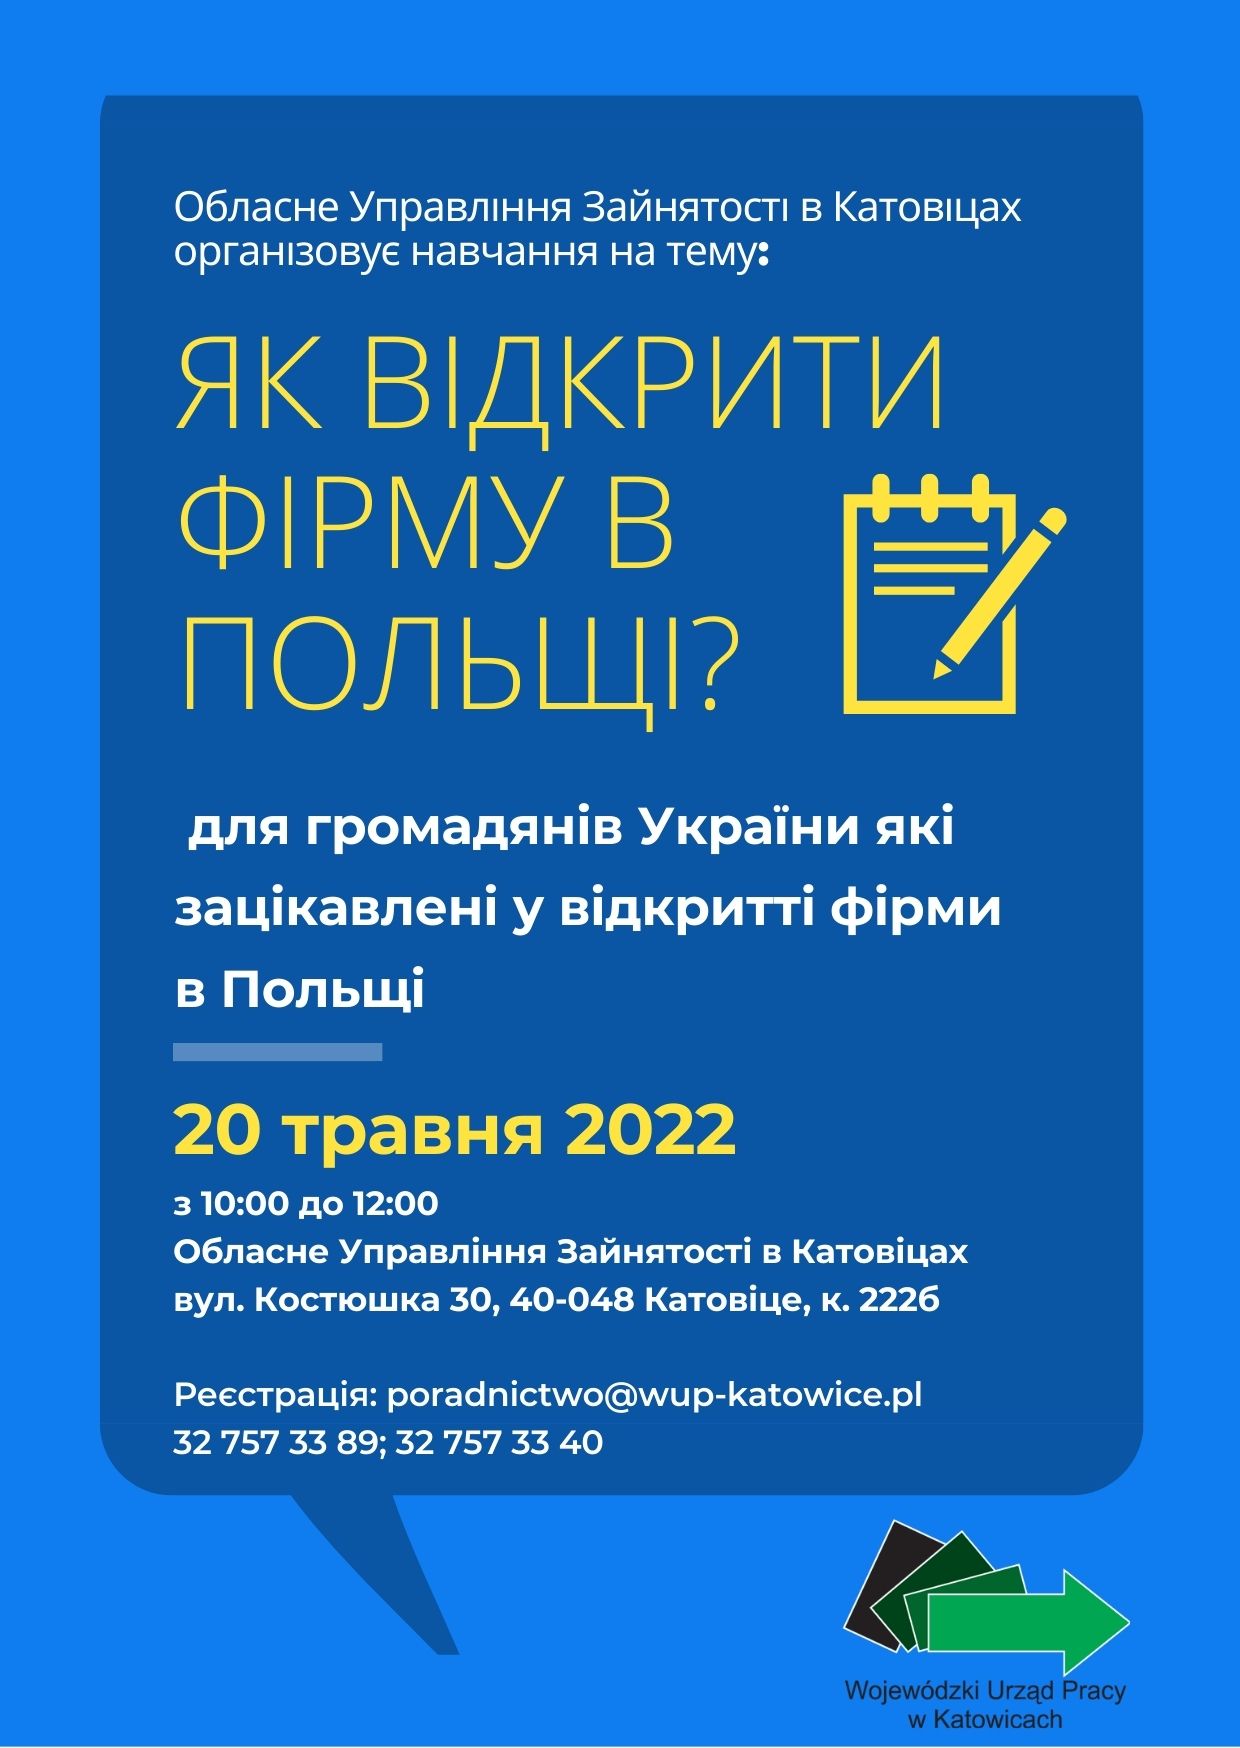 plakat dotyczący wydarzenia w języku ukraińskim